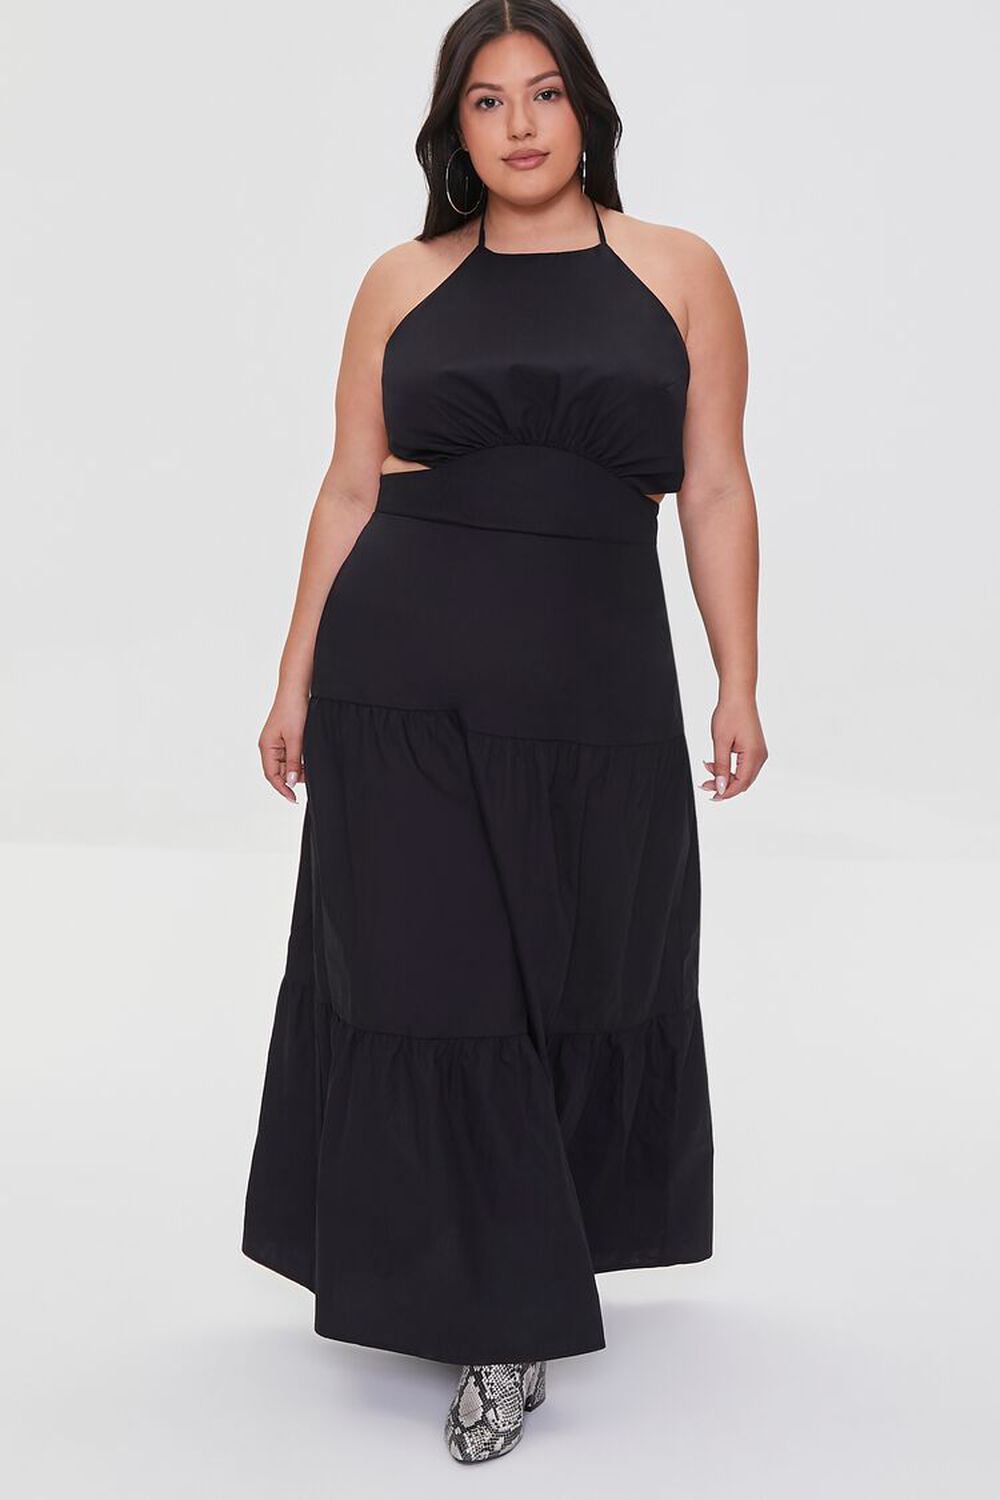 BLACK Plus Size Halter Cutout Maxi Dress, image 1